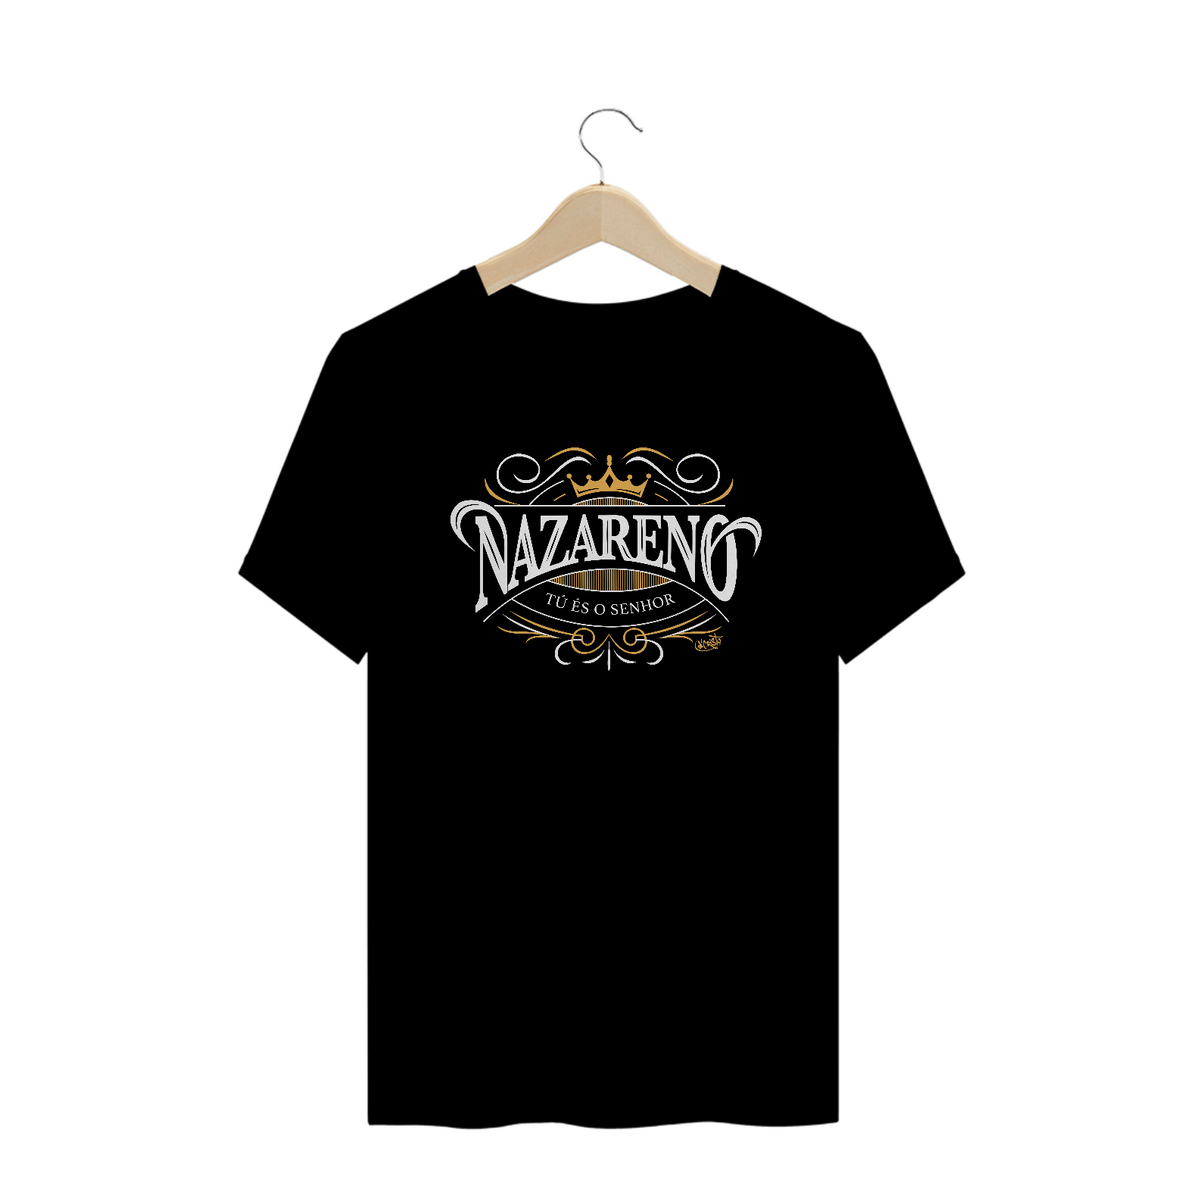 Nome do produto: Camiseta Nazareno (cores escuras)